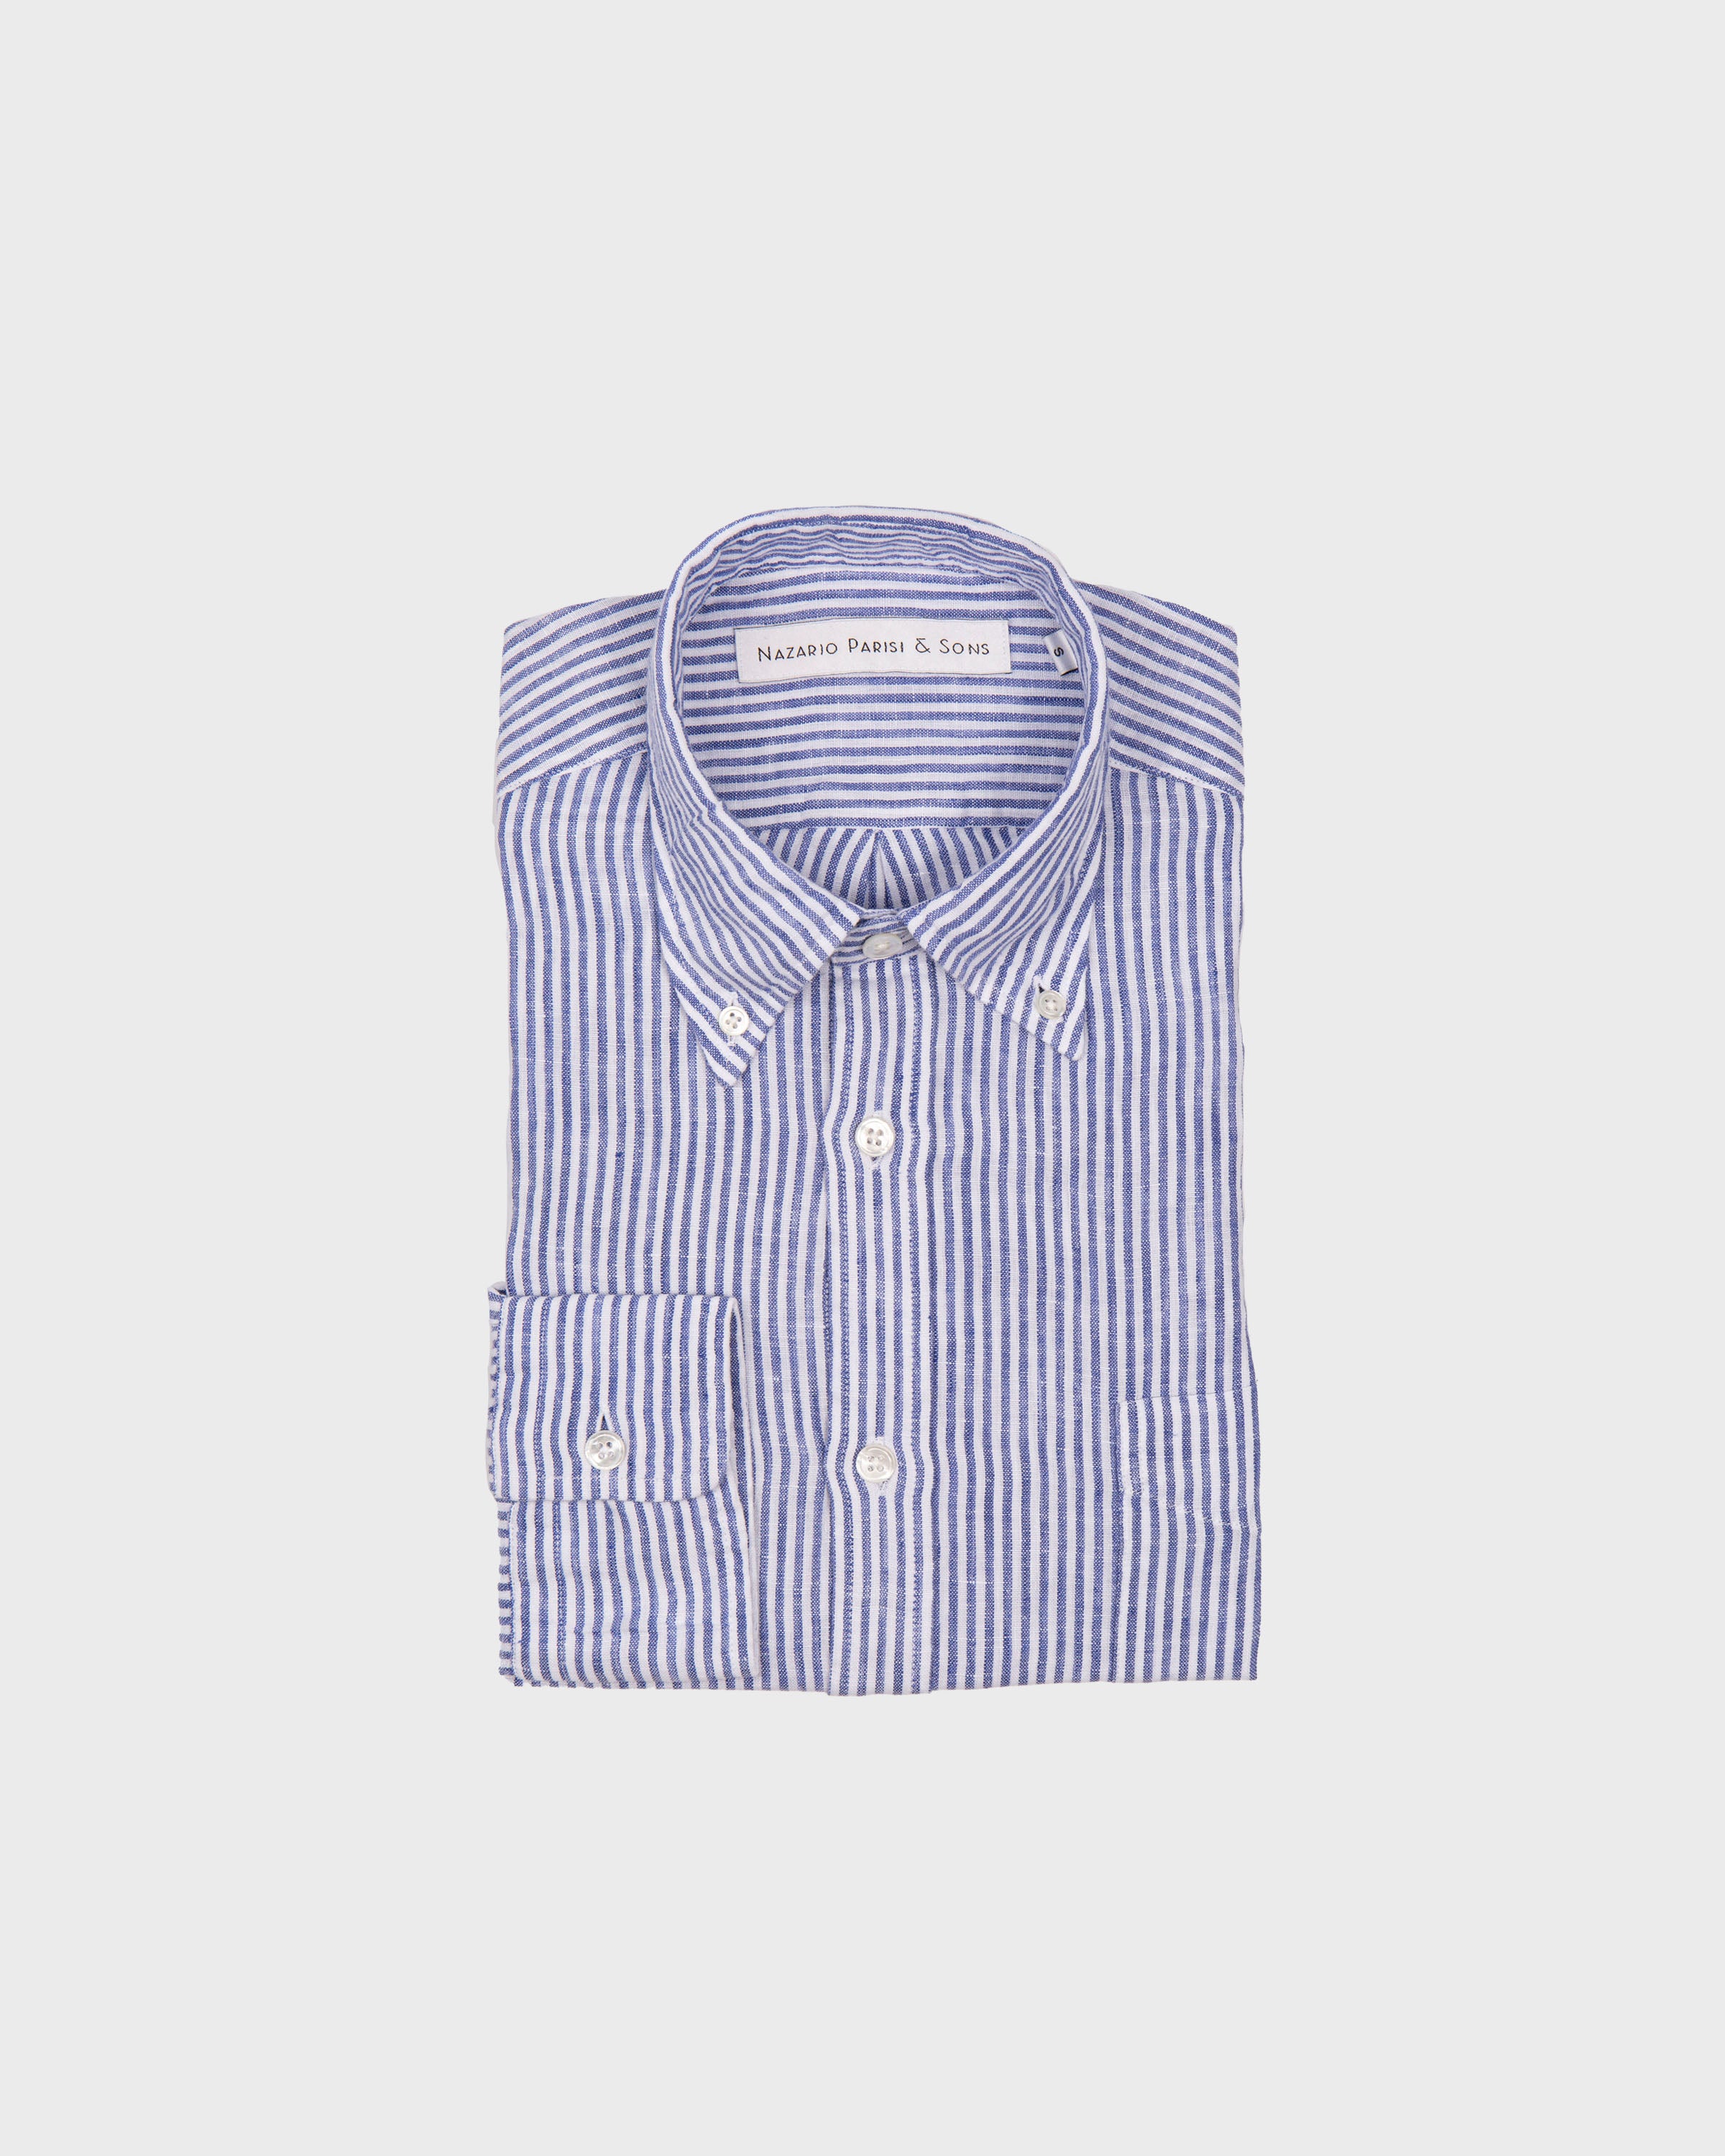 Capri Navy Stripe Linen Shirt